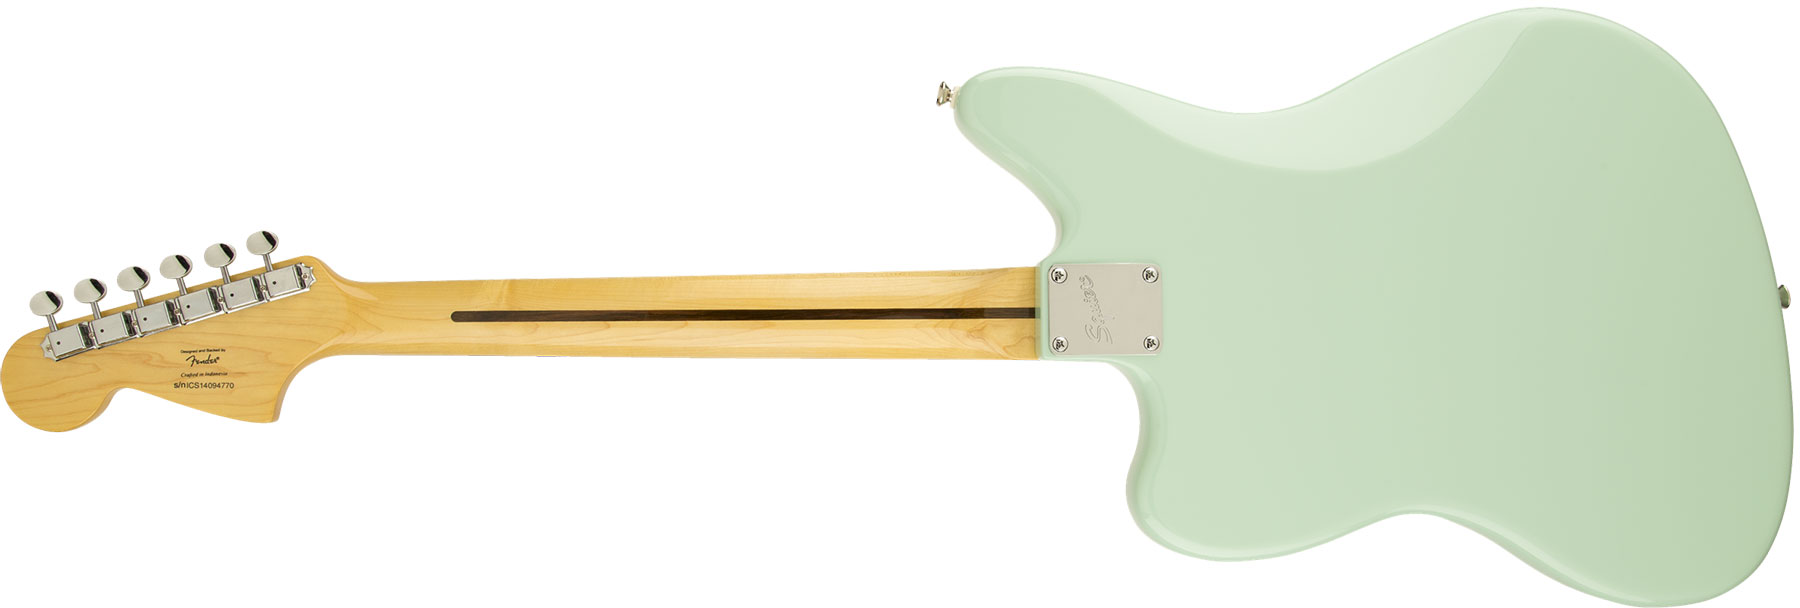 Squier Jaguar Vintage Modified Ss Lau - Surf Green - E-Gitarre in Str-Form - Variation 1